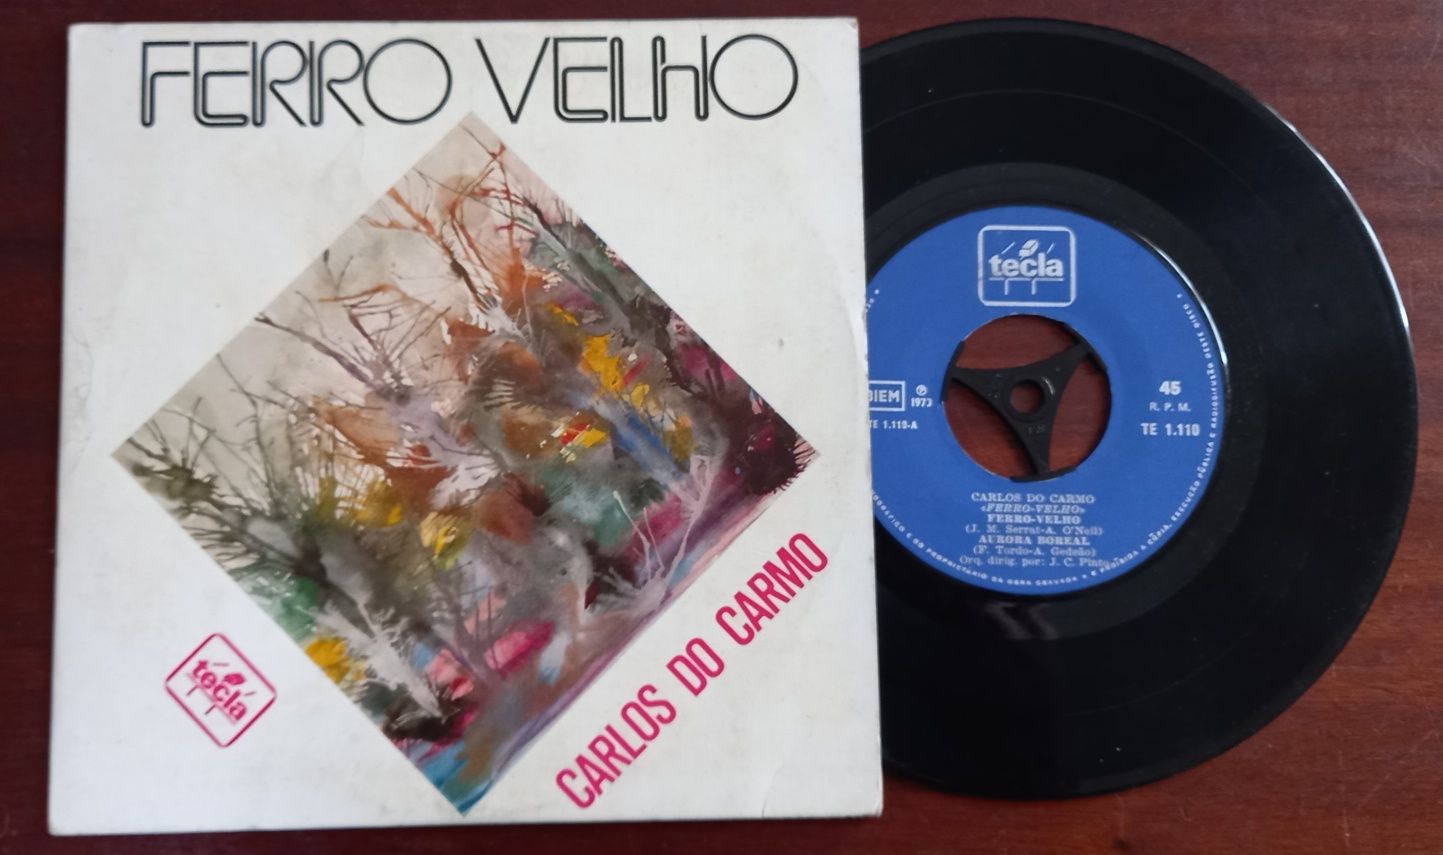 Carlos do Carmo - Singles EP 1972 e 1973 Fado